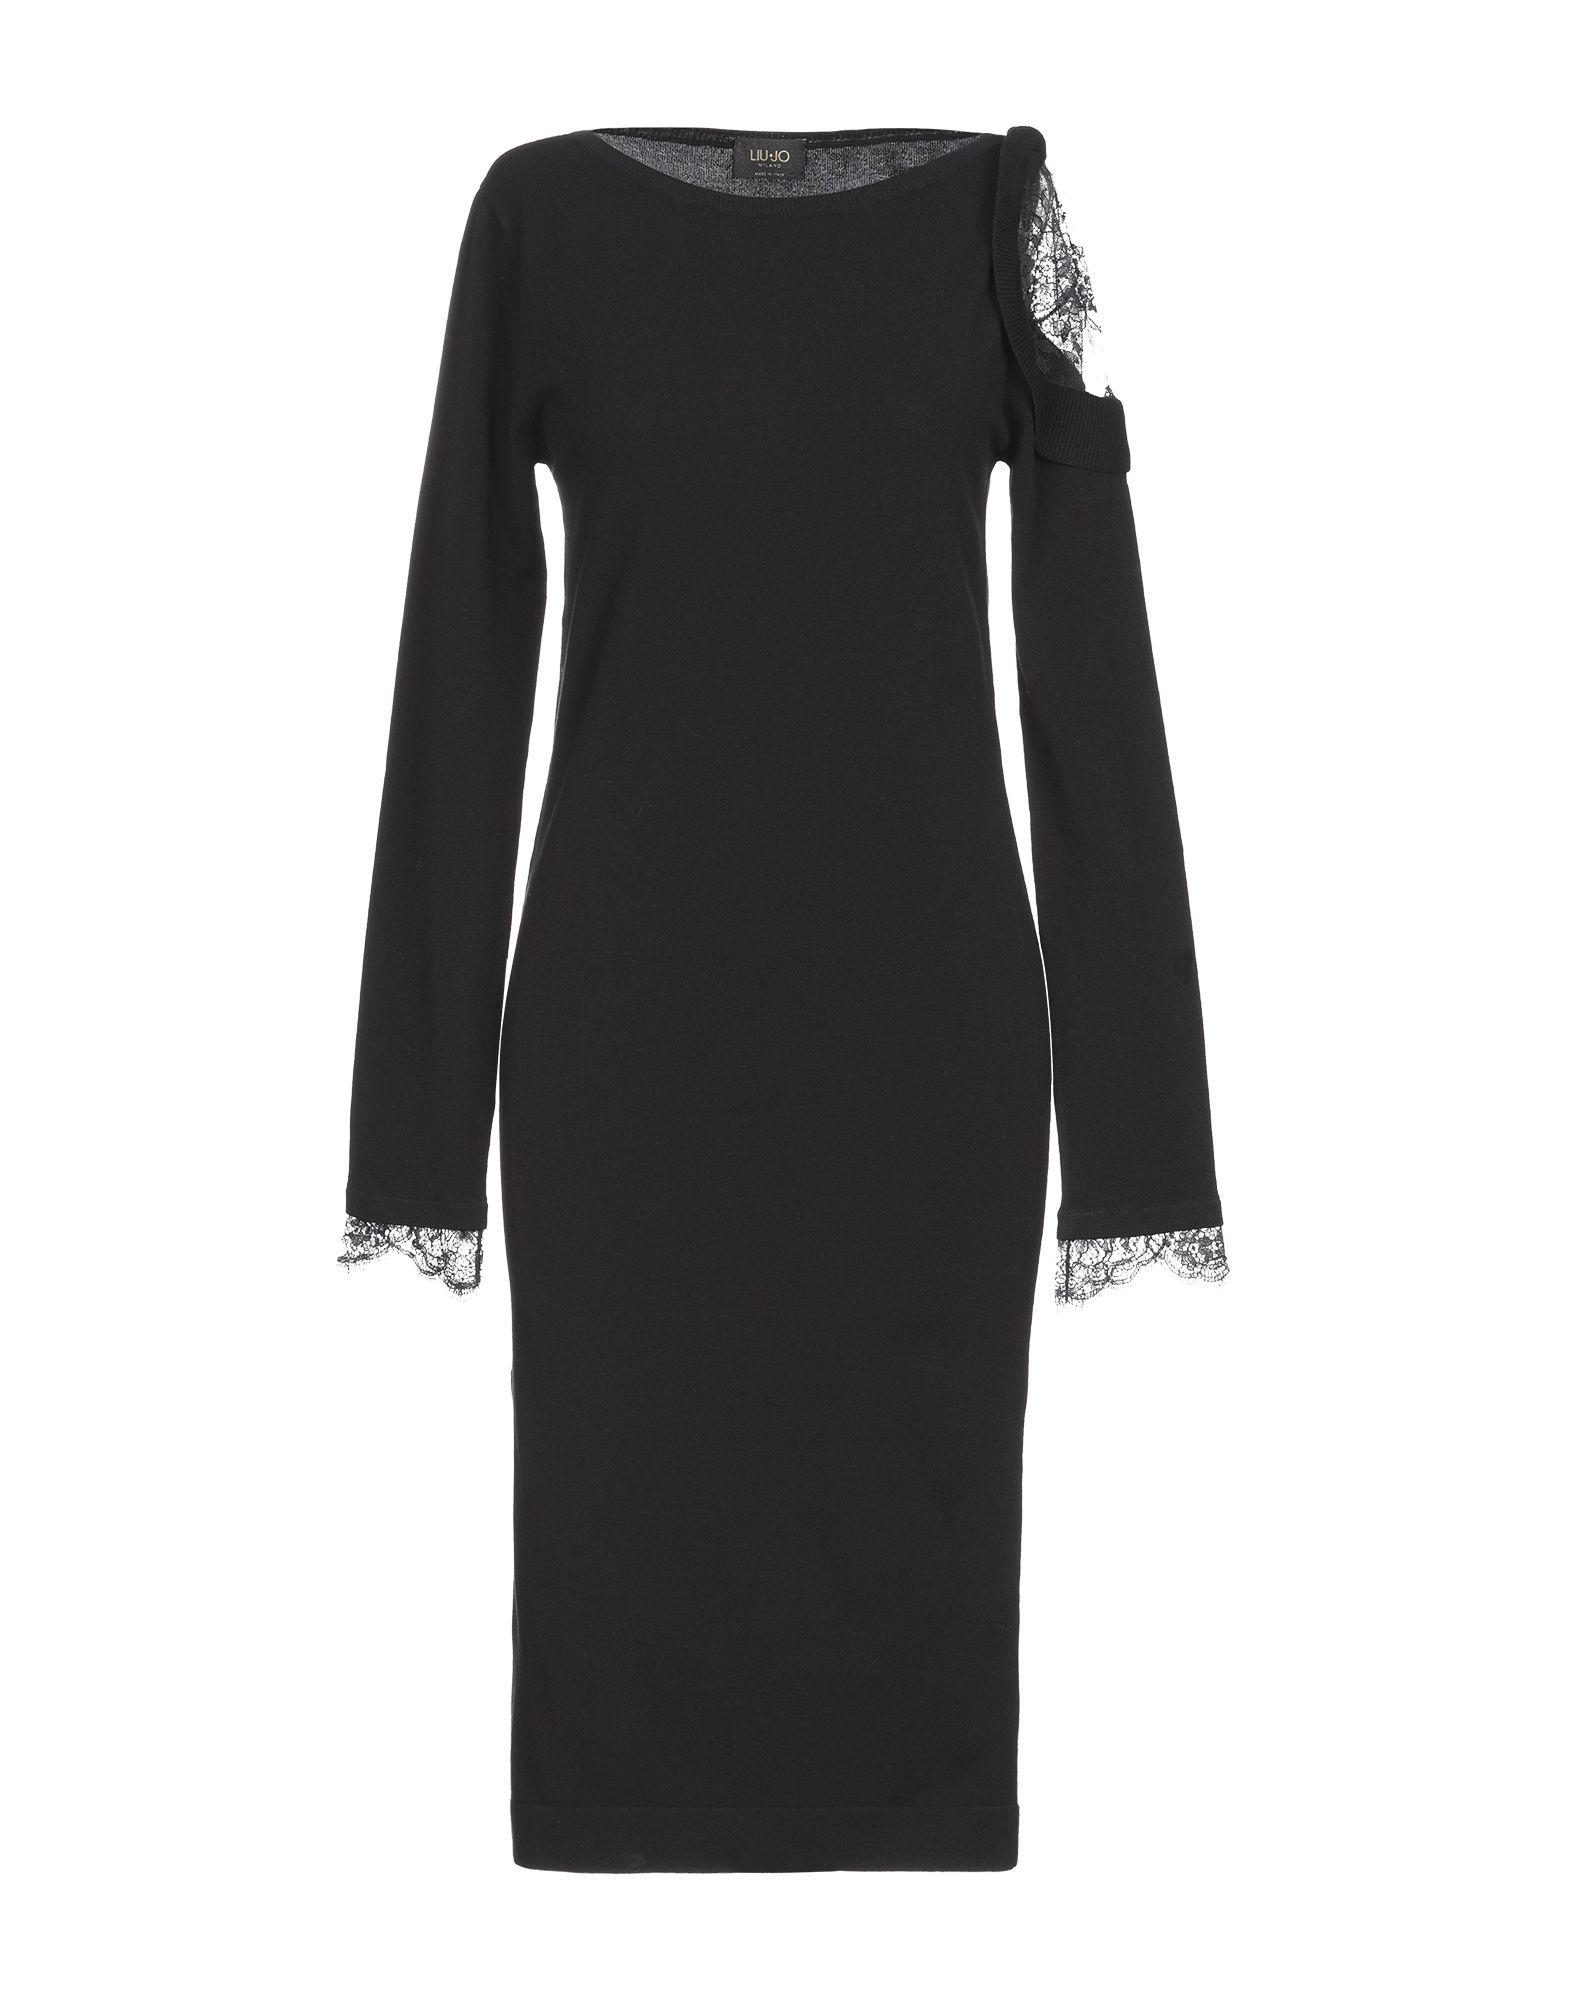 Liu Jo Knee-length Dress in Black - Lyst